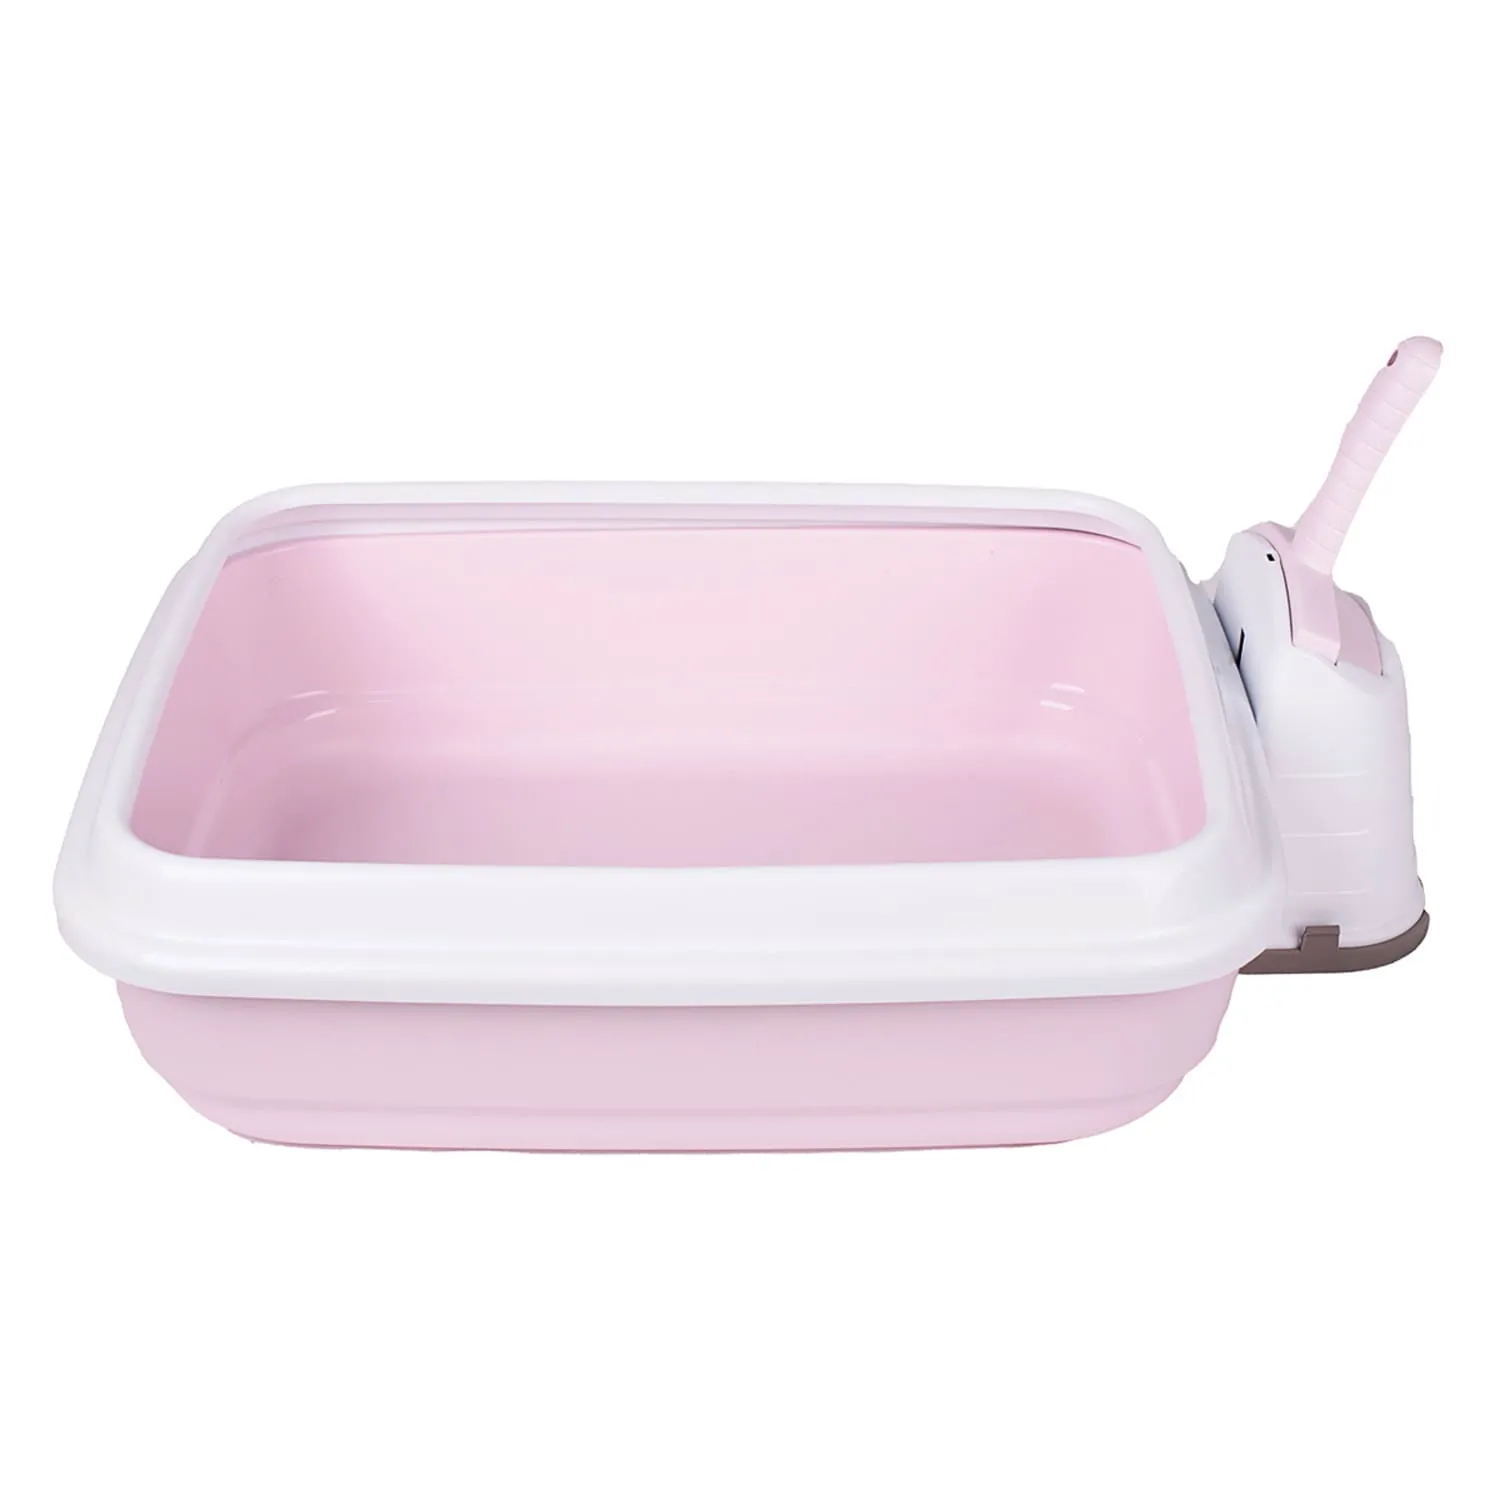 IMAC туалет-лоток для кошек DUO с совочком на подставке 59х40х28h см, нежно-розовый